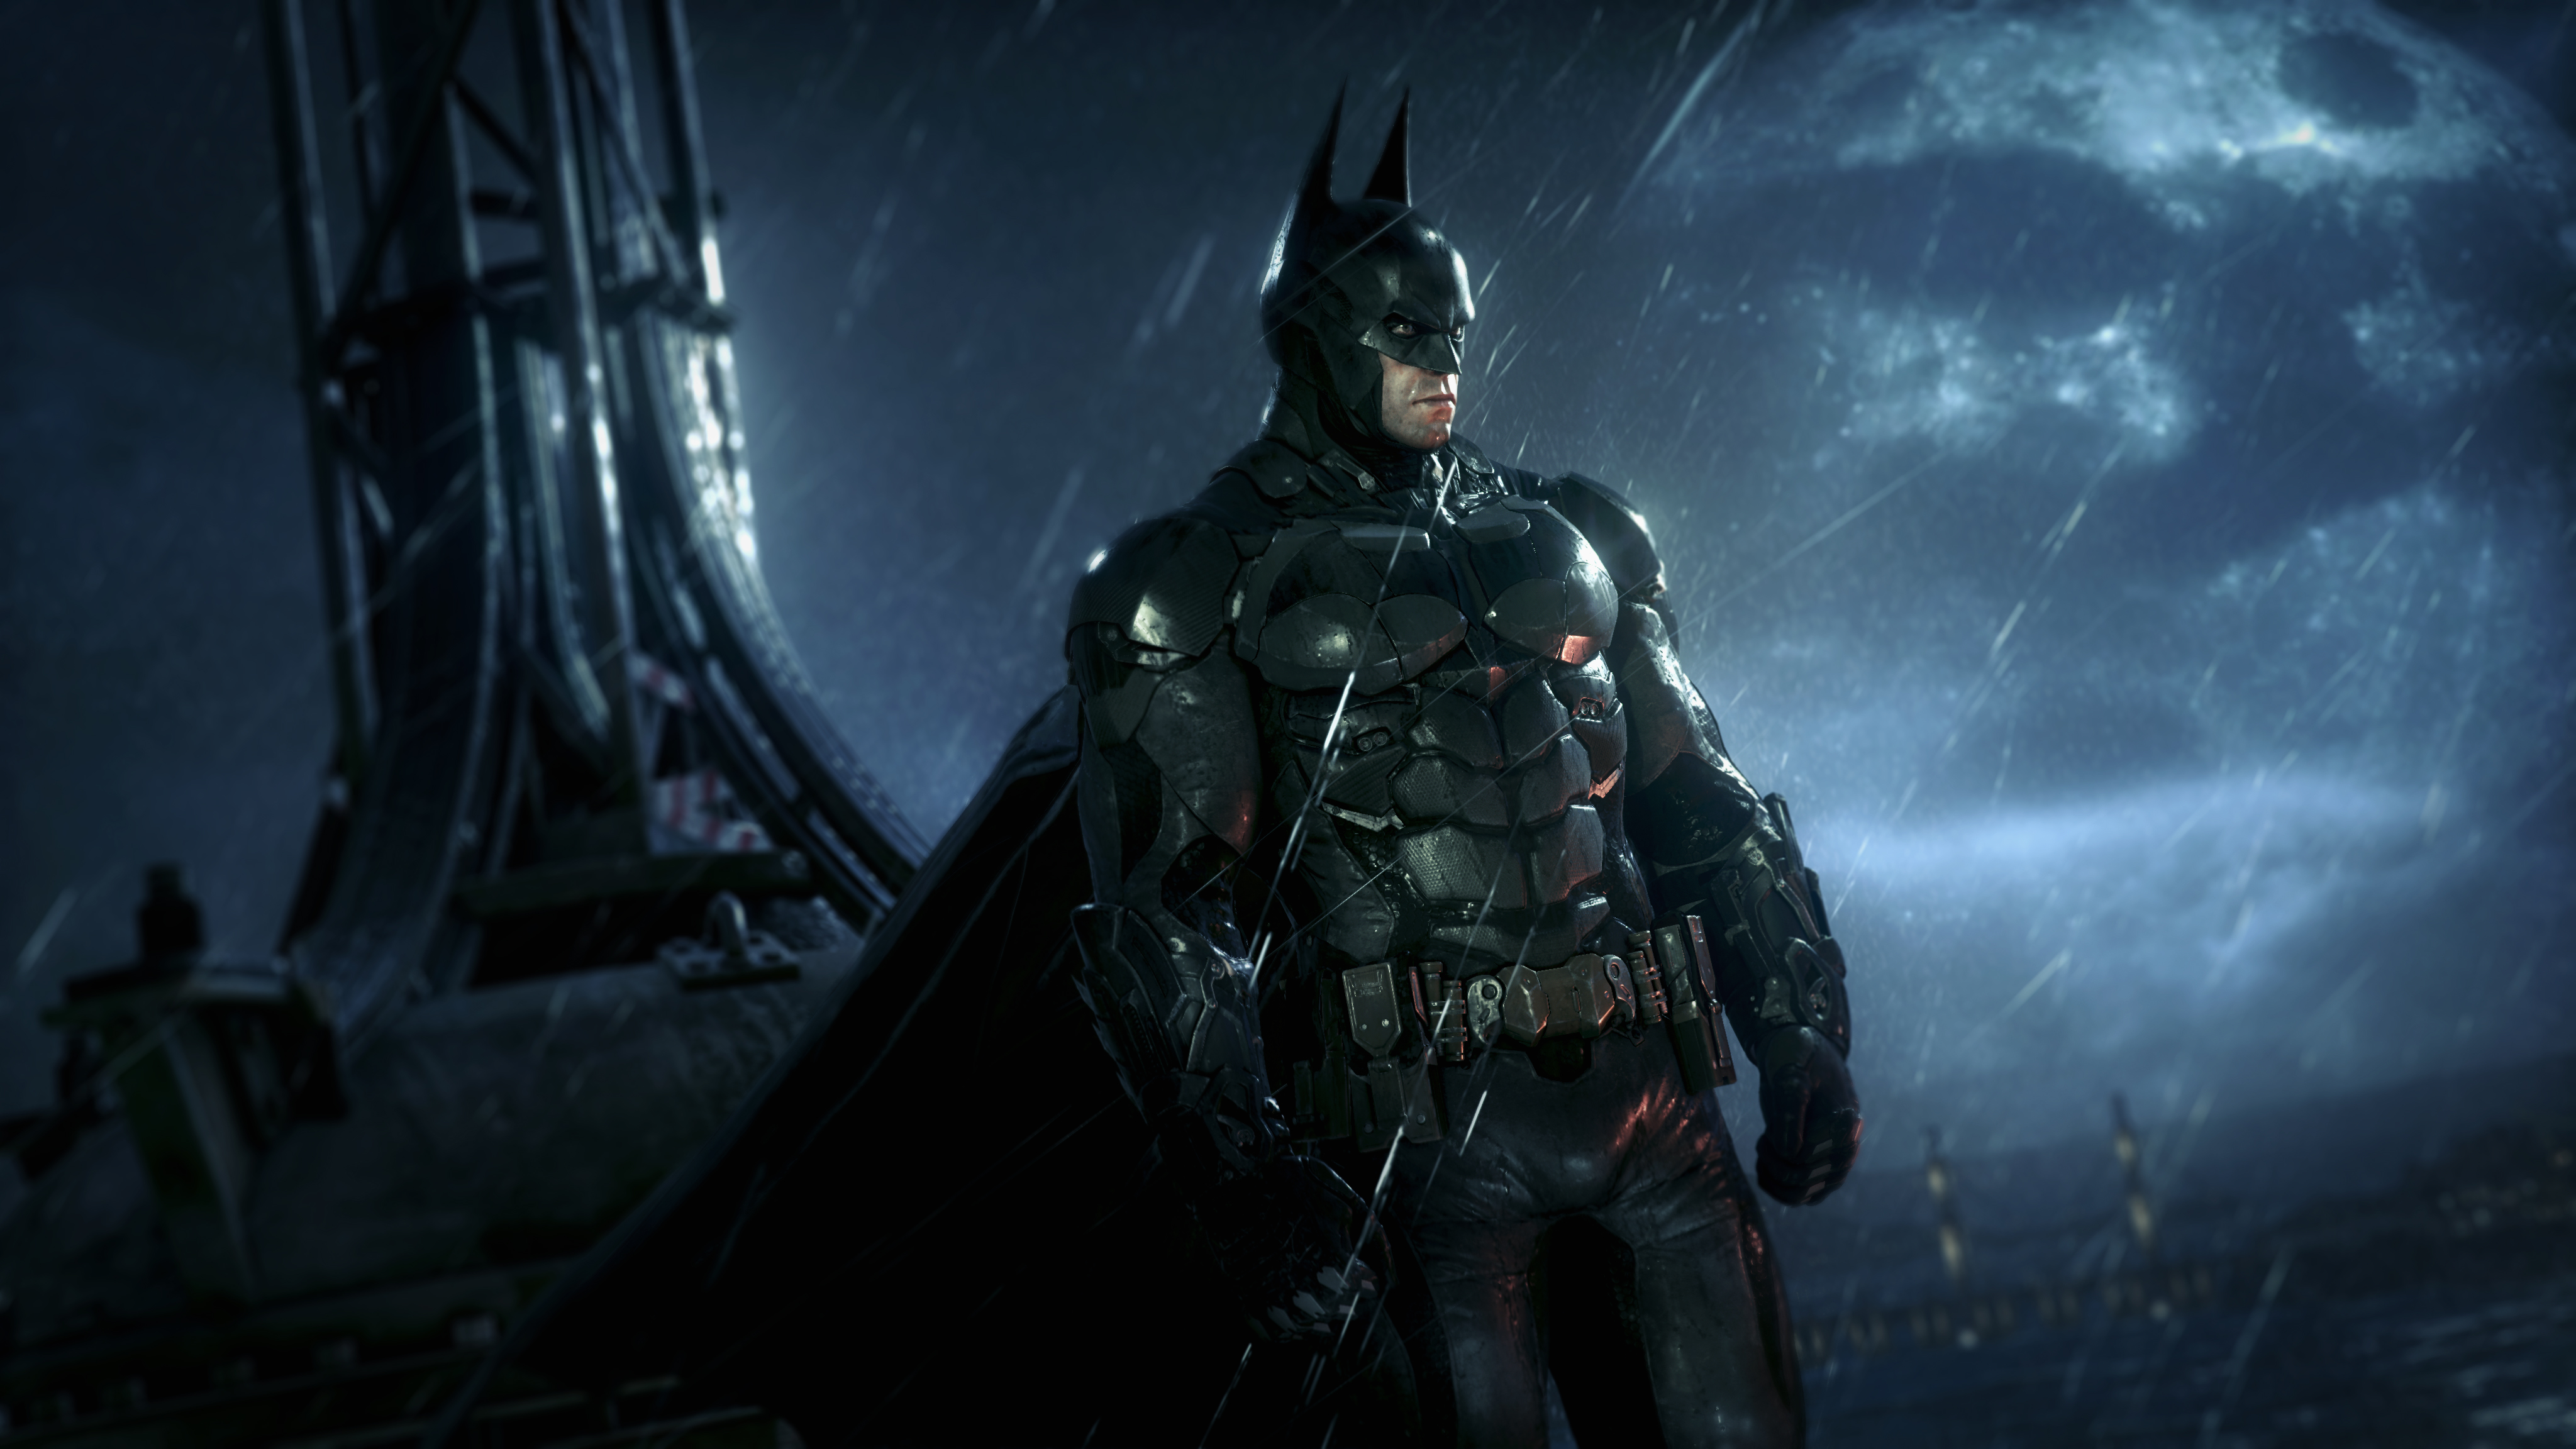 Revelados nuevos detalles e imágenes de Batman: Arkham Knight, se enfocan en la creación del batimóvil 13439754605_8a14c8b065_o